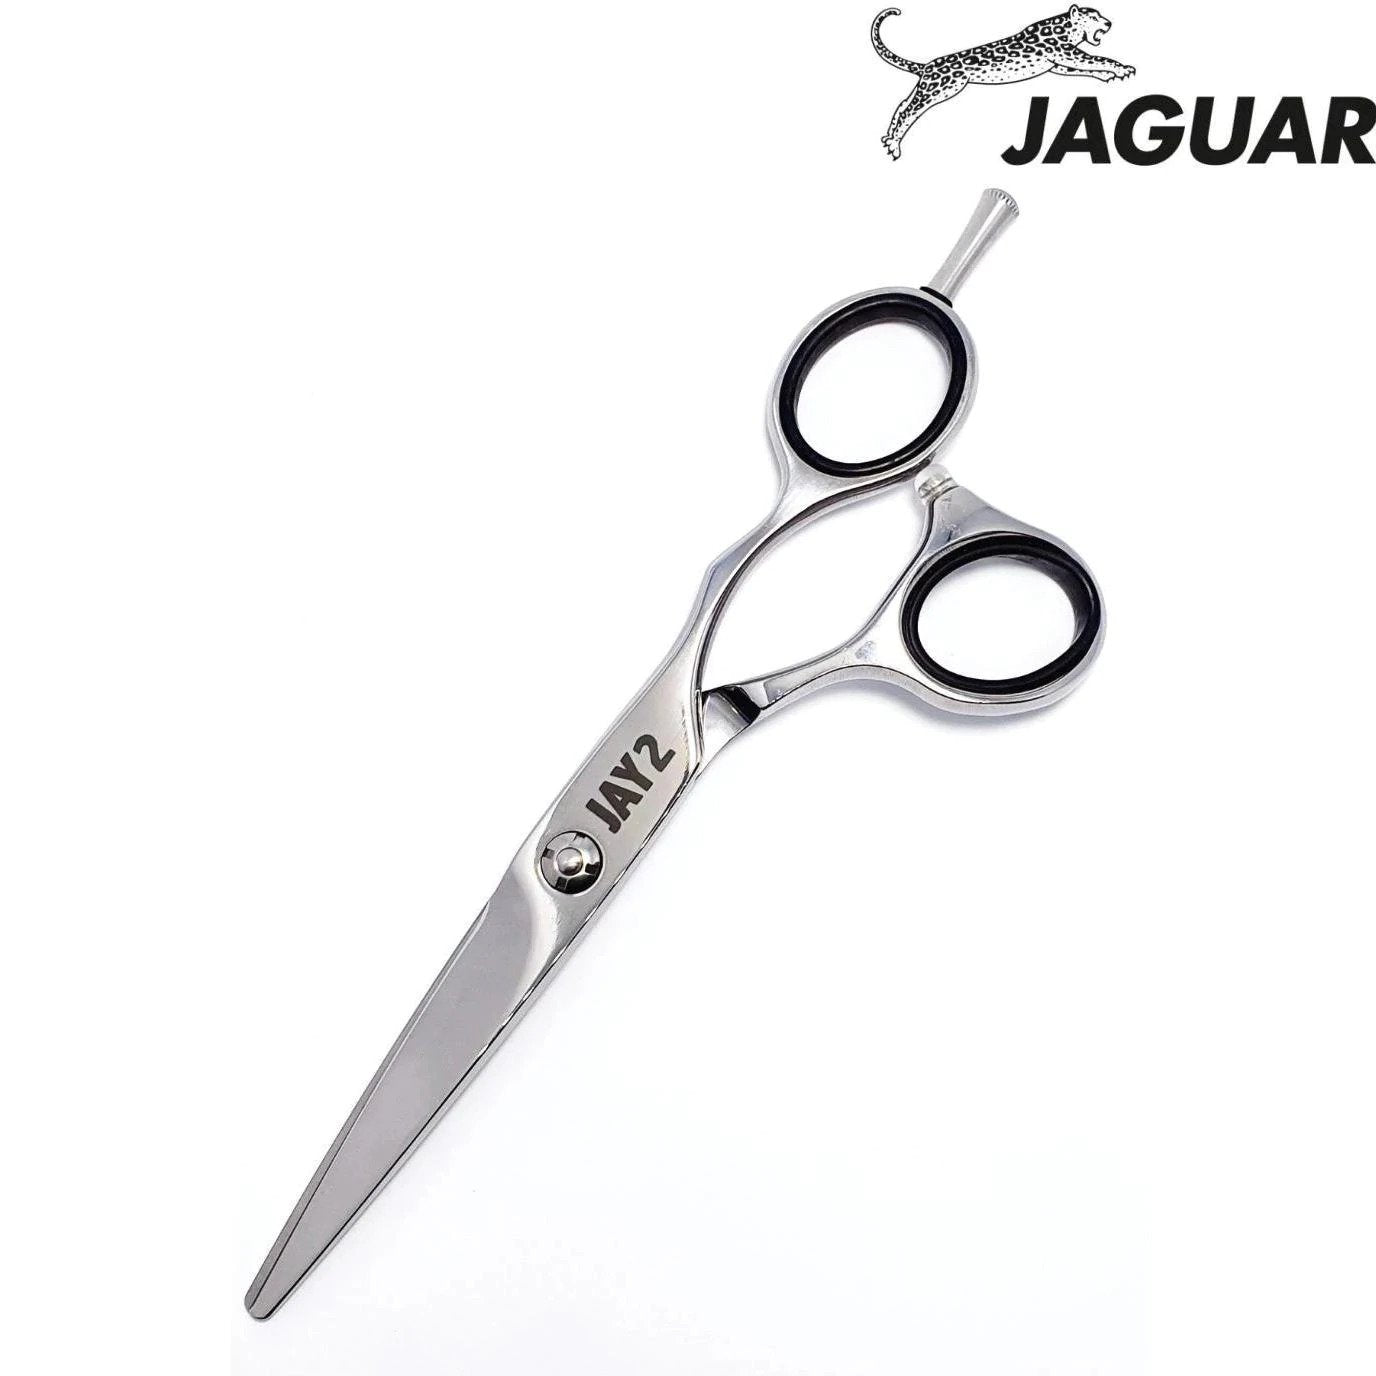 Jaguar jay2 for beginner hairdresing